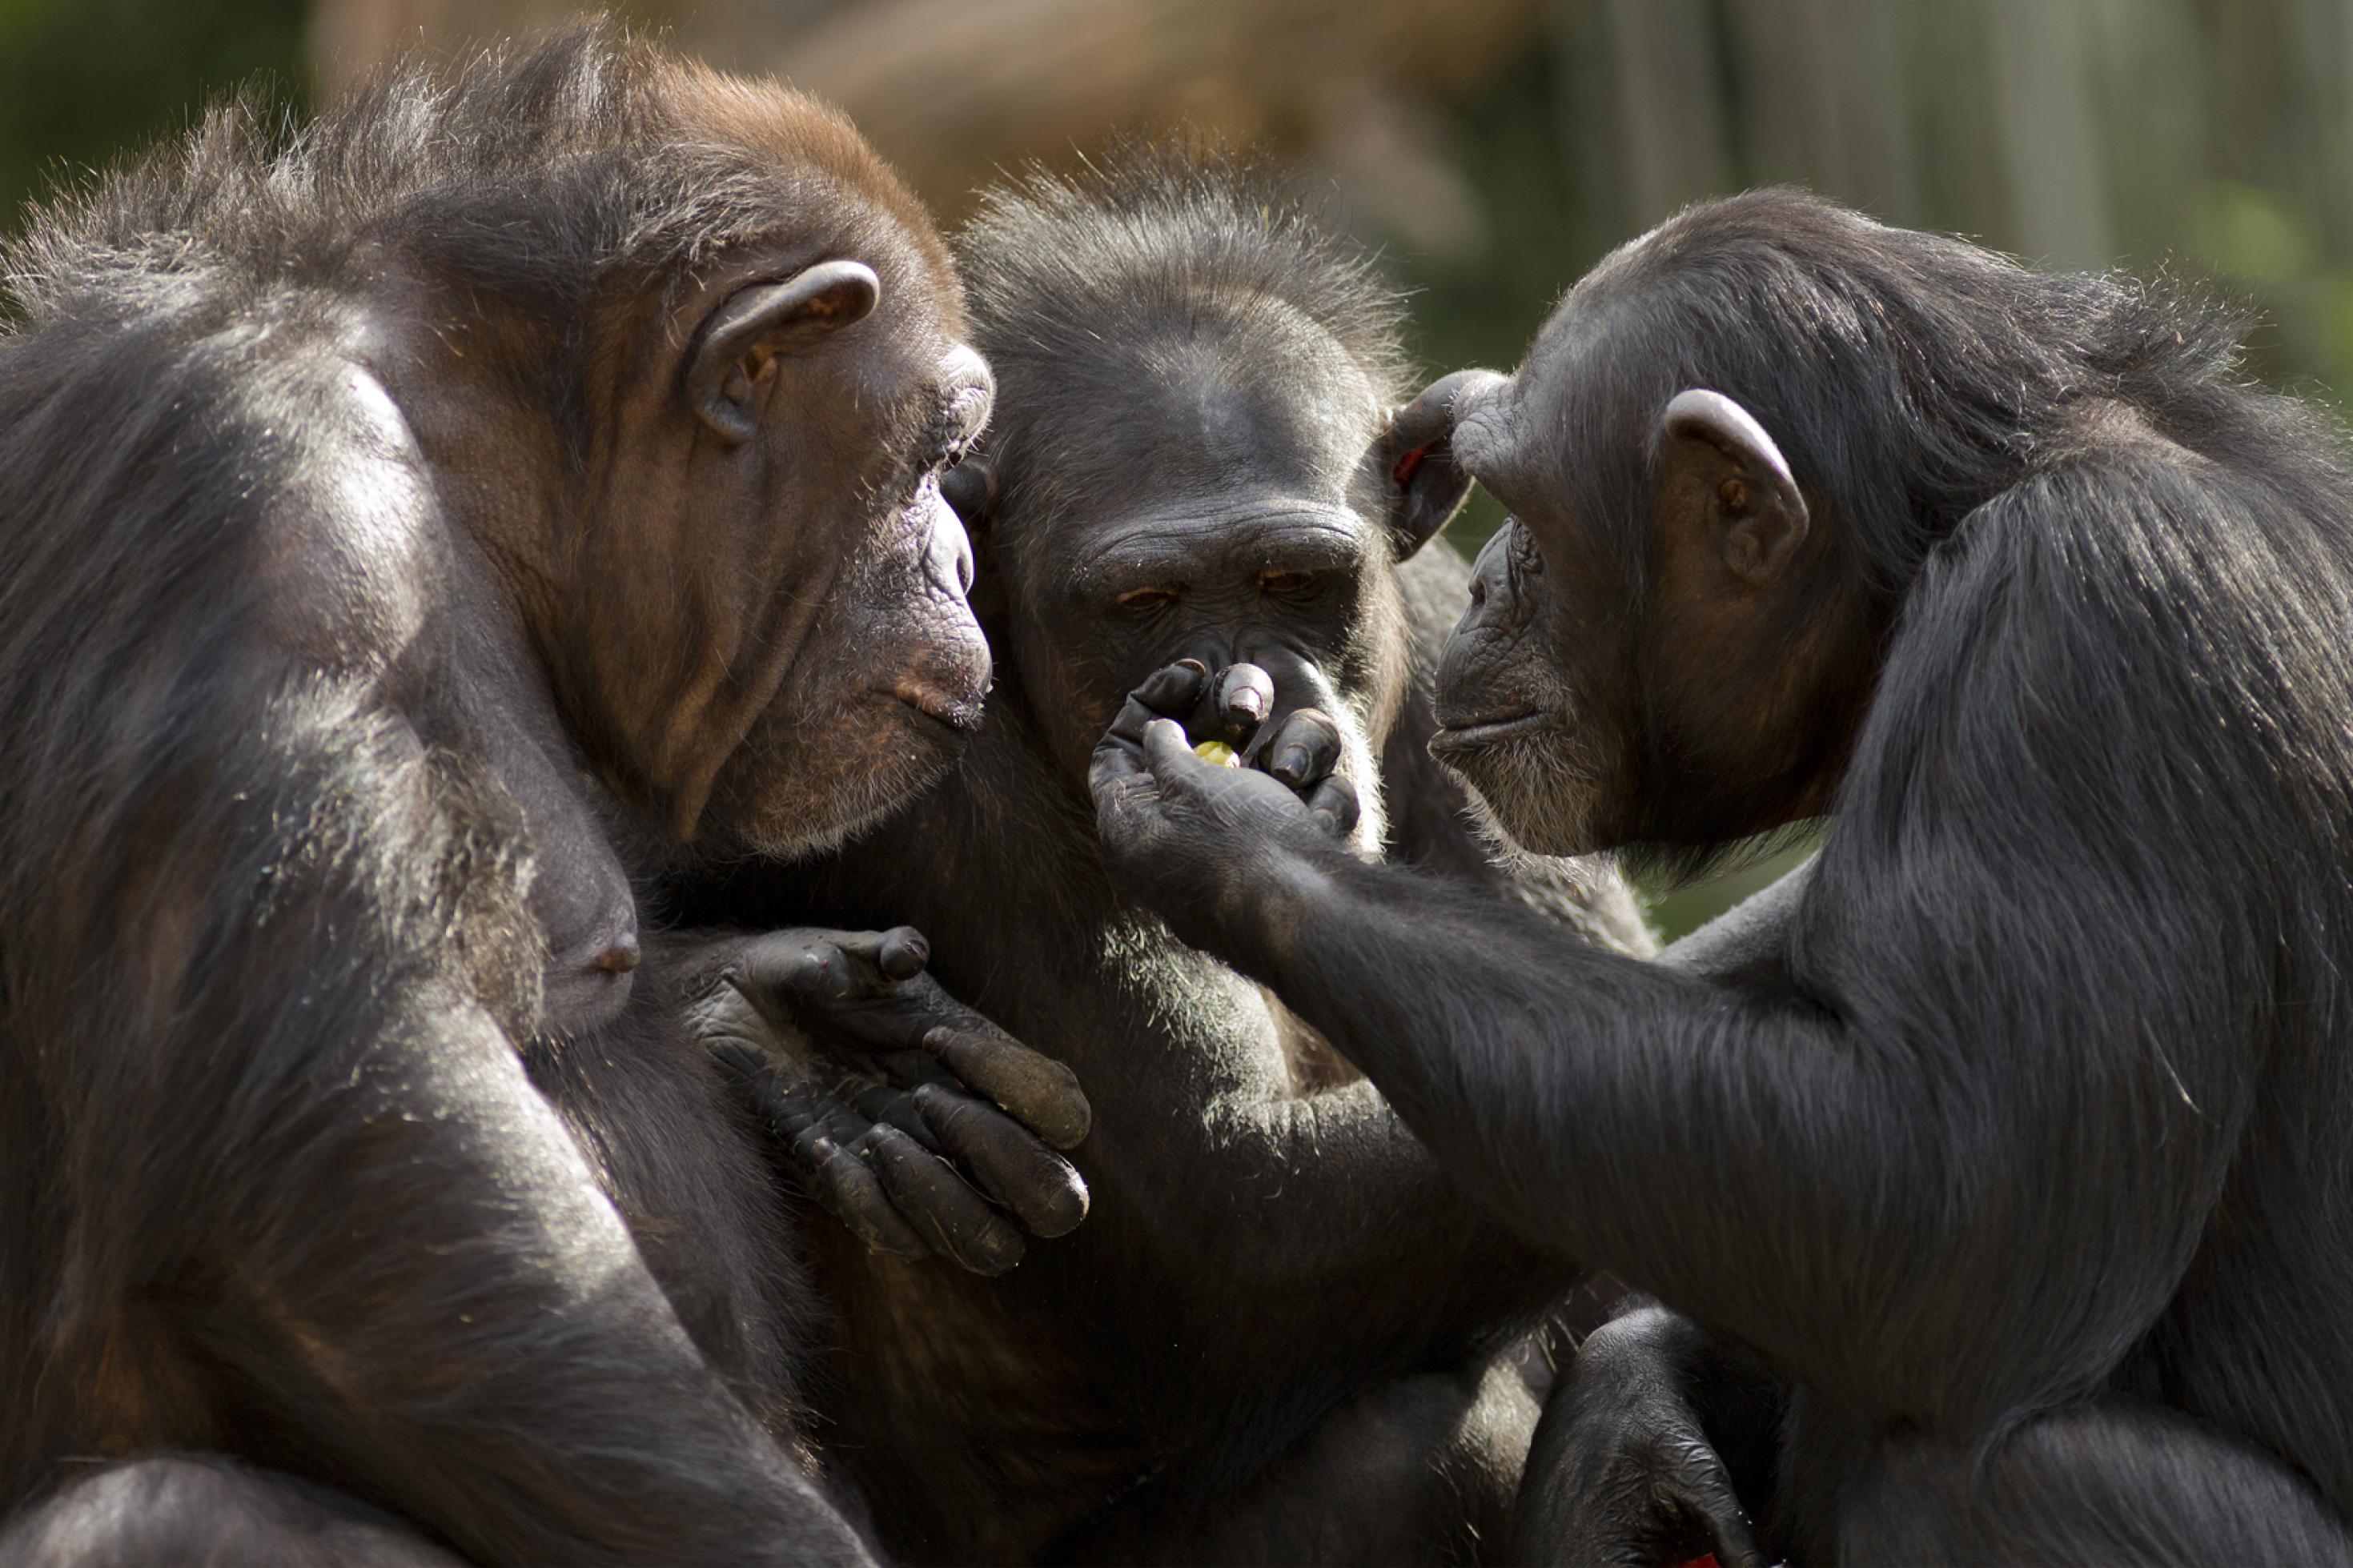 Zu sehen sind die Schultern und Köpfe von drei Schimpansen, die einander zugewandt sind und auf die erhobene, in der Mitte des Bildes zu sehende Hand des einen starren, die offenbar eine Frucht enthält. Schimpansen besitzen hochentwickelte soziale und geistige Fähigkeiten, ein großes Gehirn und Hände, die denen des Menschen sehr ähnlich sind. Vor vielen Jahrmillionen wurden die Affen zum Ausgangspunkt für die Evolution des Homo sapiens.